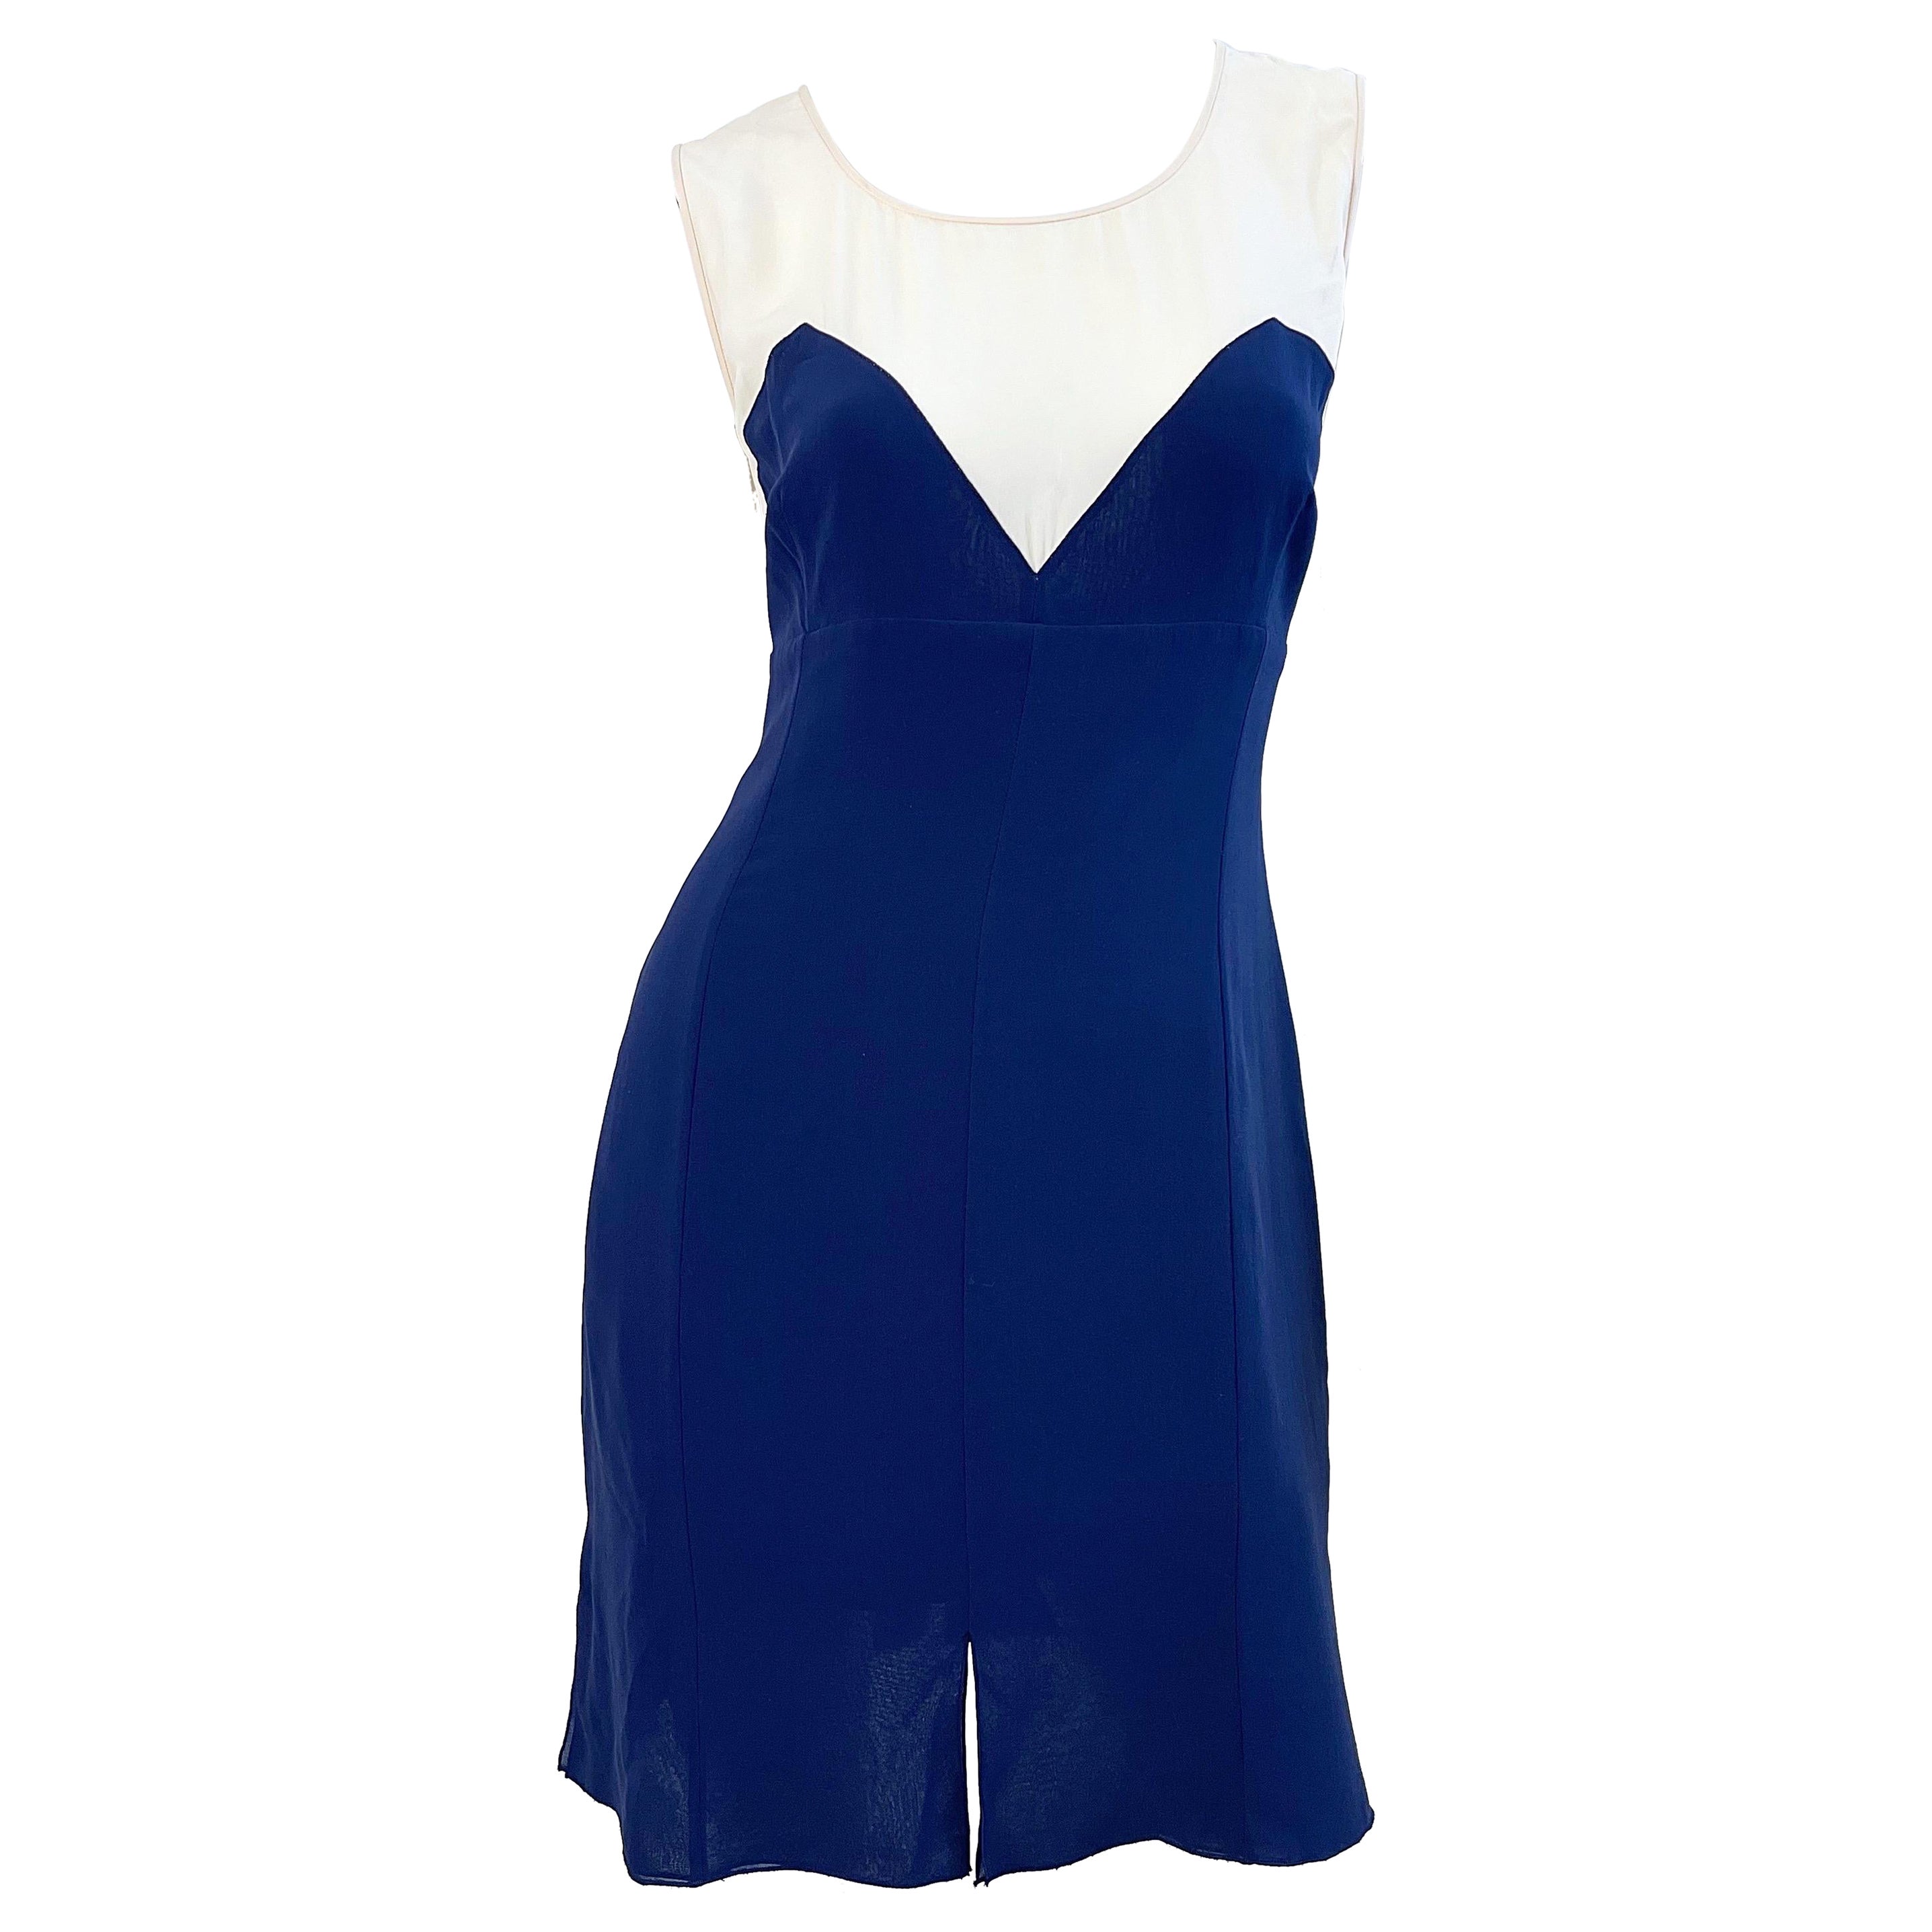 Karl Lagerfeld 1980er Jahre Vintage 80er Jahre Kleid aus Seidenchiffon in Marineblau, Größe 44 / US 10